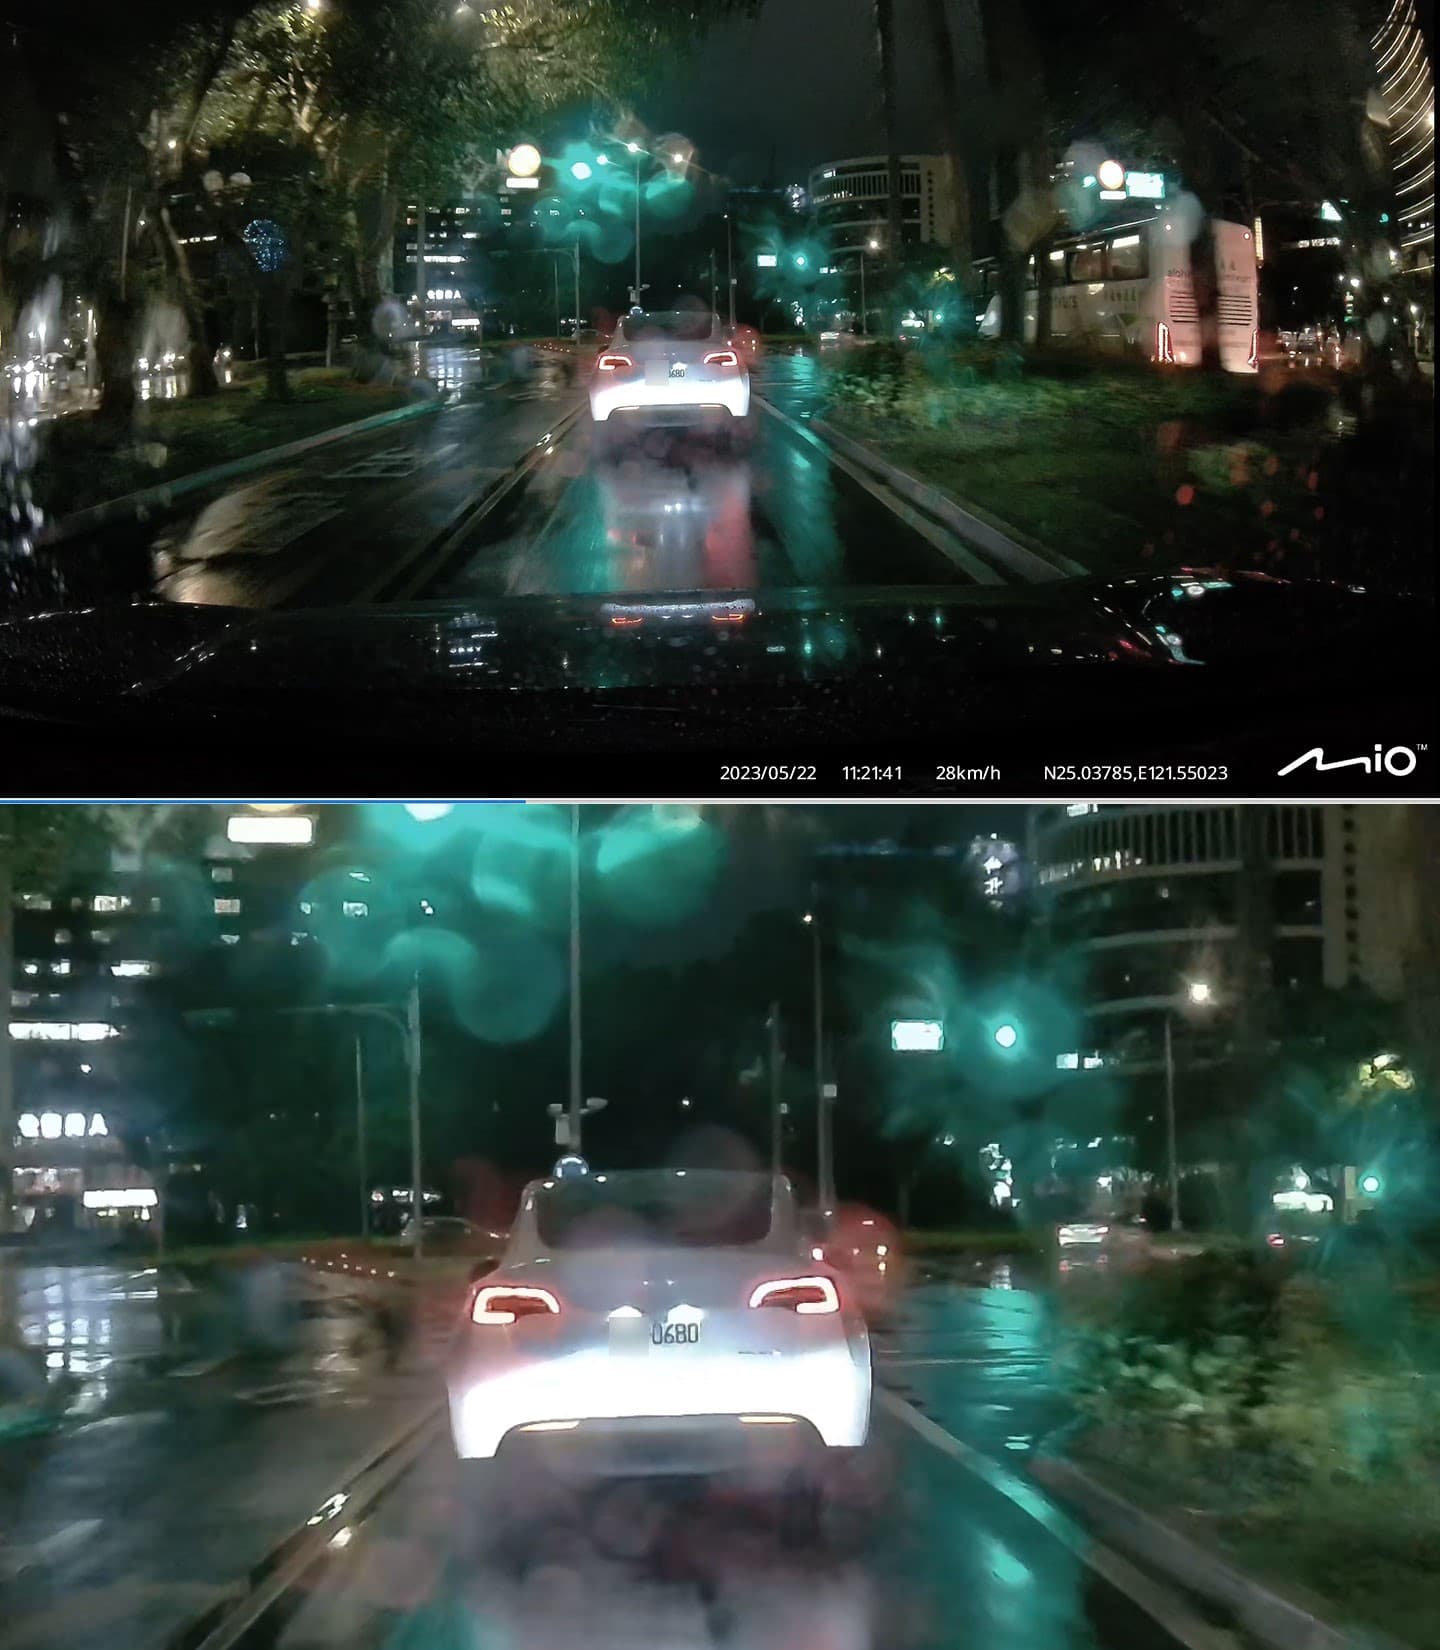 另一組 955W 前鏡於夜間雨天環境的實拍畫面，前車距離較遠（約 10 公尺），不過放大後影像的車牌辨效果還是很不錯。